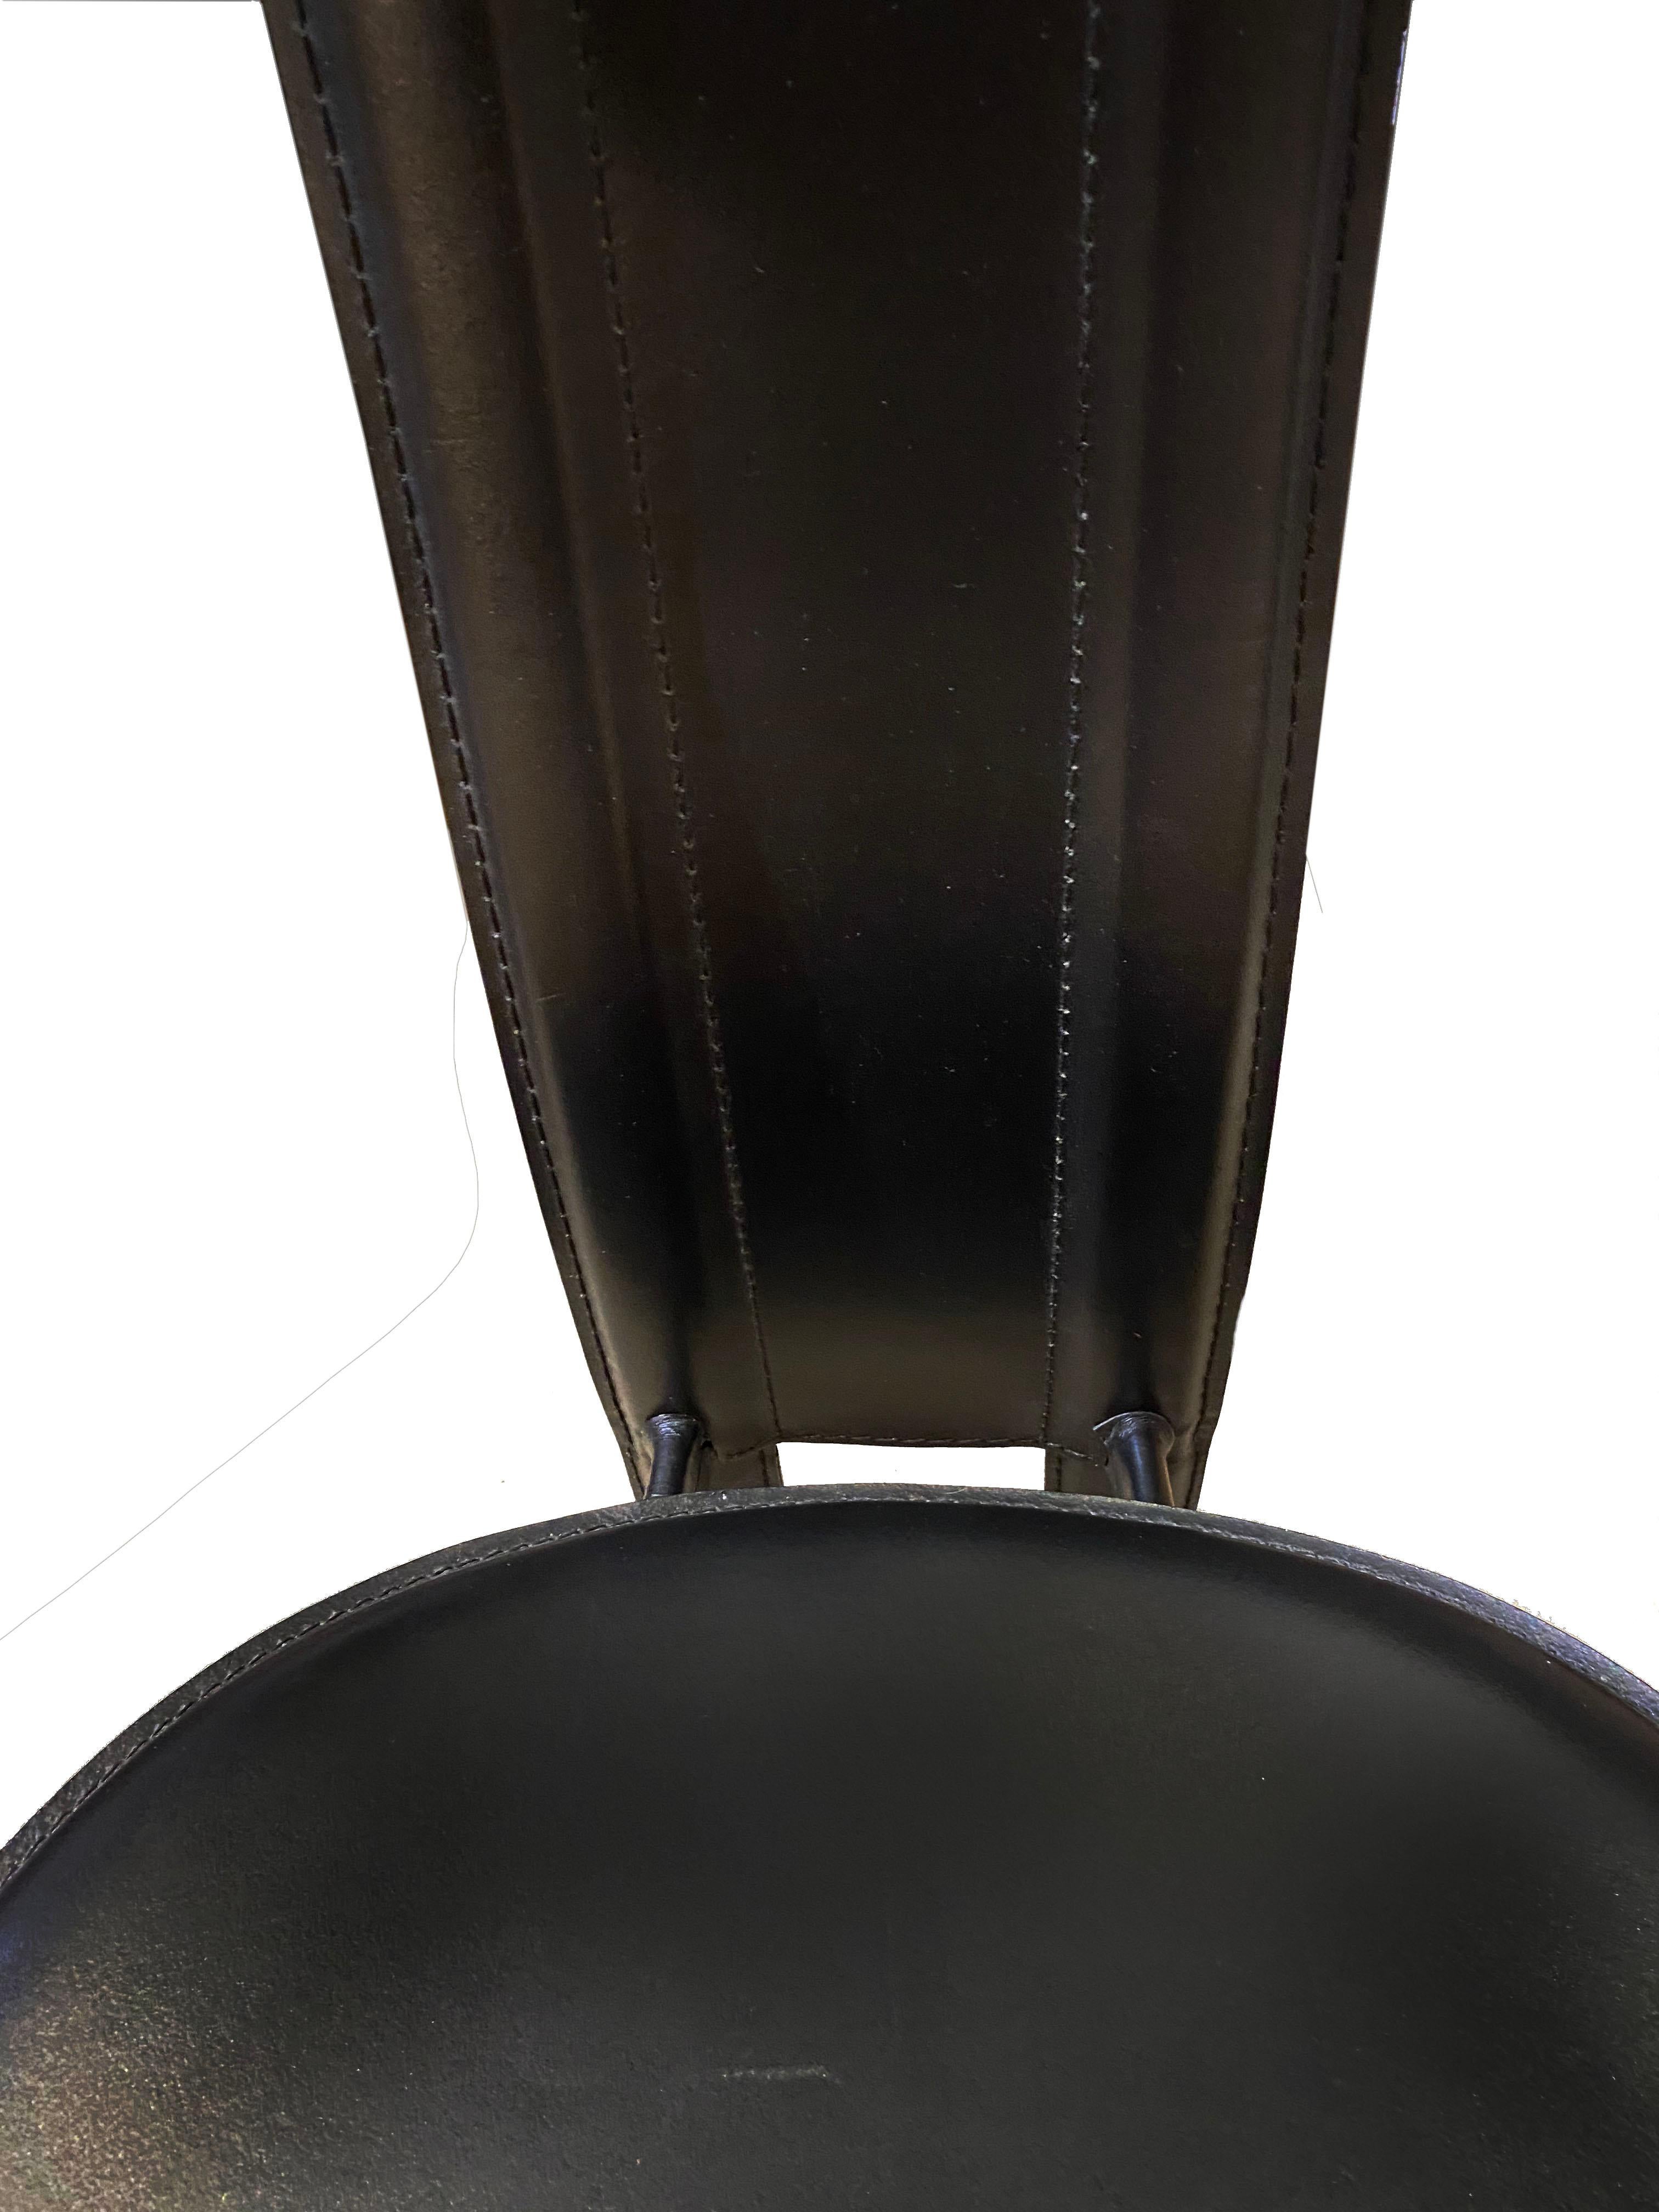 Cattelan Italia Sitzgruppe mit 4 Stühlen

schwarzes Leder / Metall
um 1980
Maße: 106 x 49 x 45 cm
die 4: 890 Euro.